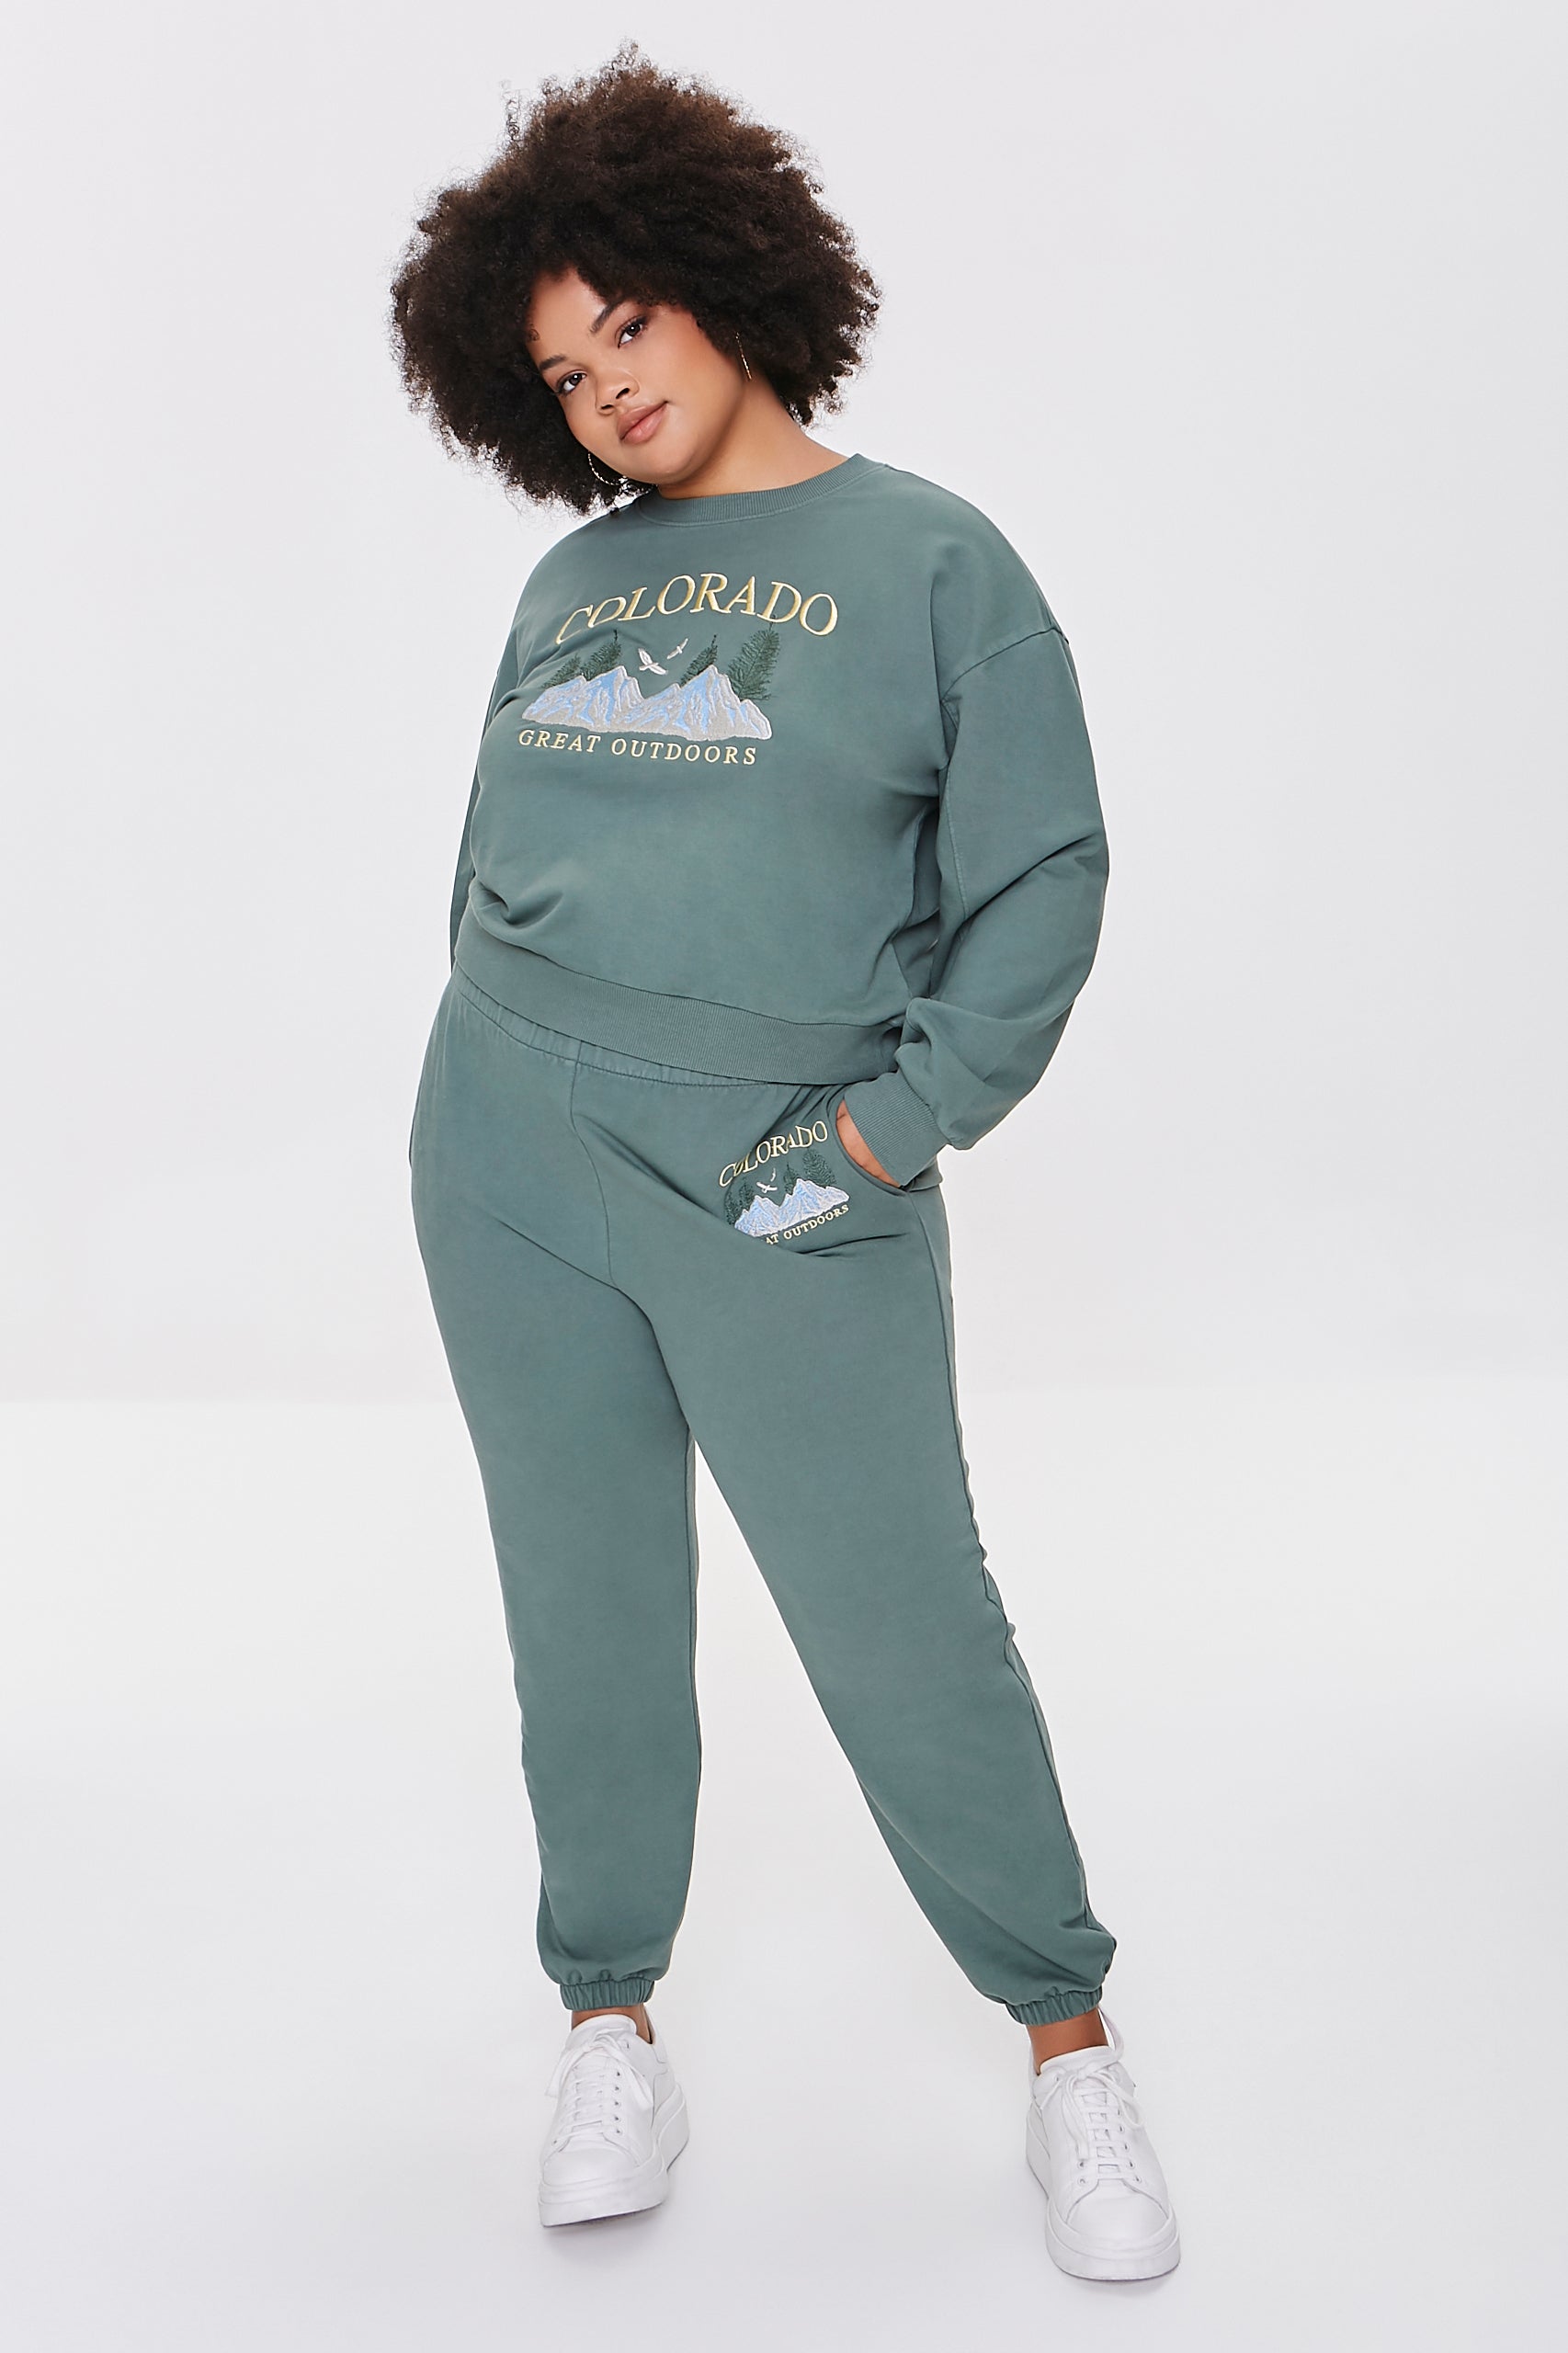 Green/multi Plus Size Embroidered Colorado Pullover